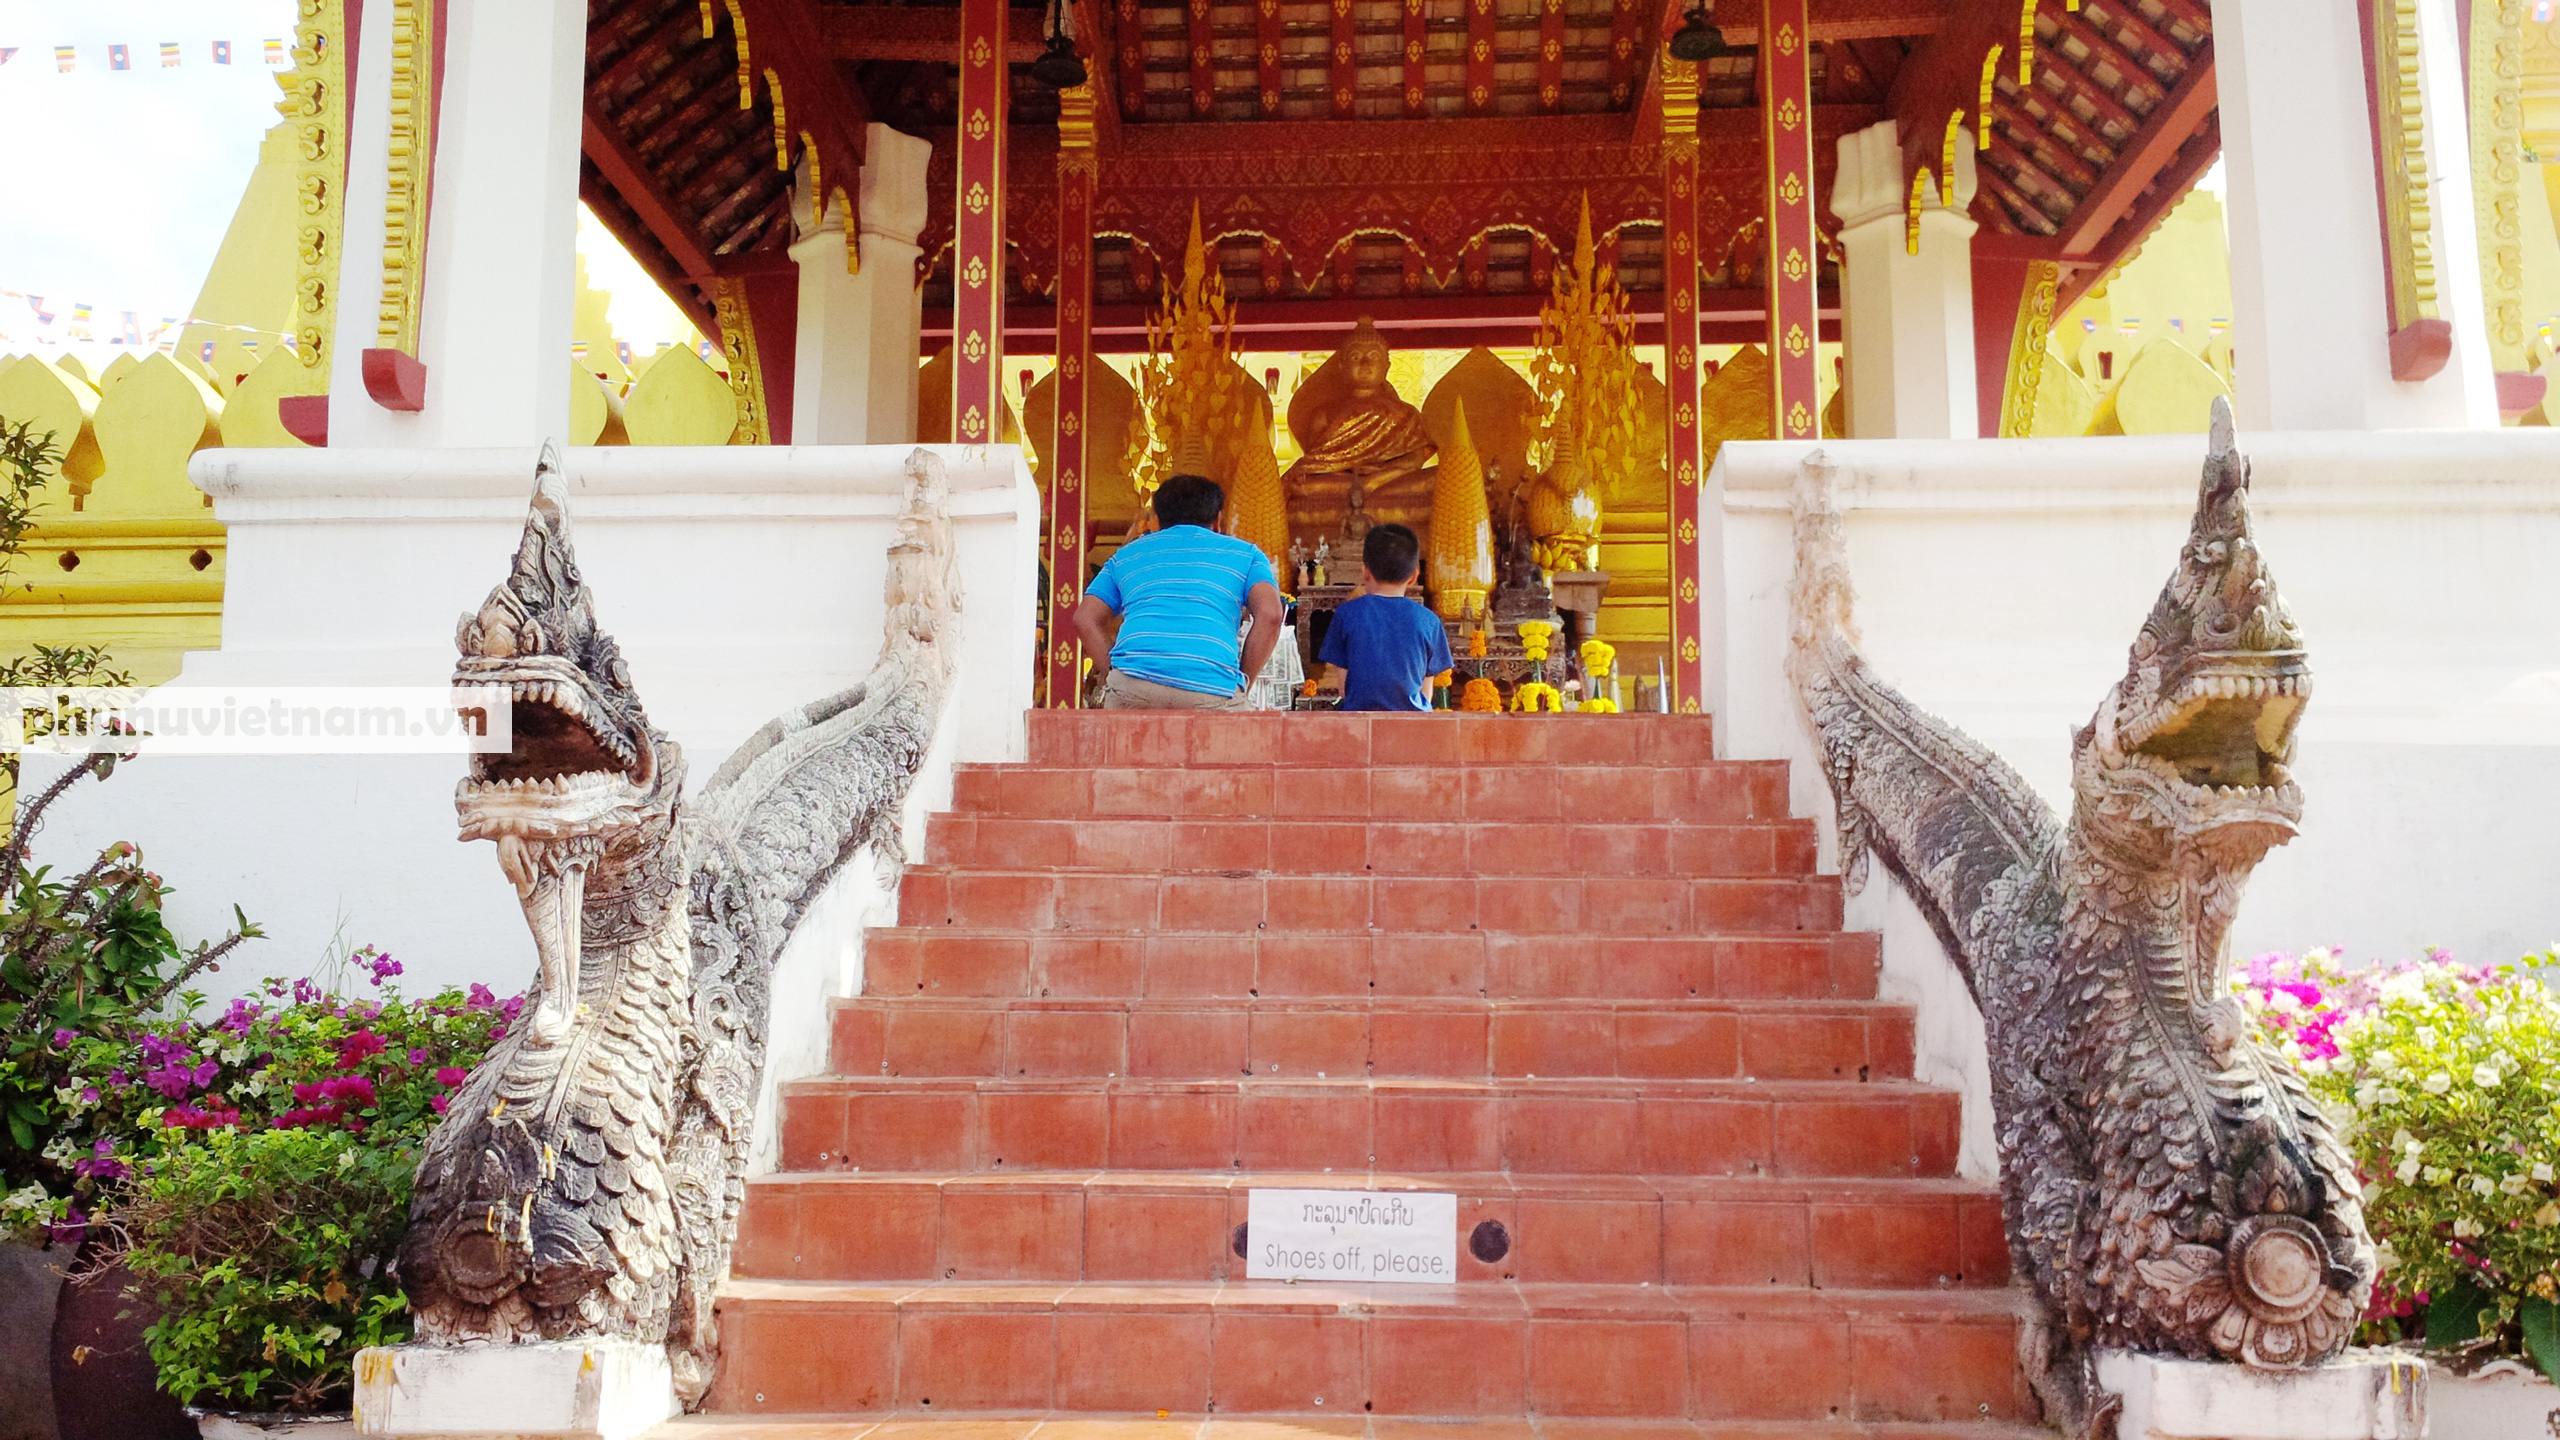 Chiêm ngưỡng ngôi tháp vàng lớn nhất của Lào, gần 500 tuổi tráng lệ giữa đất trời - Ảnh 10.